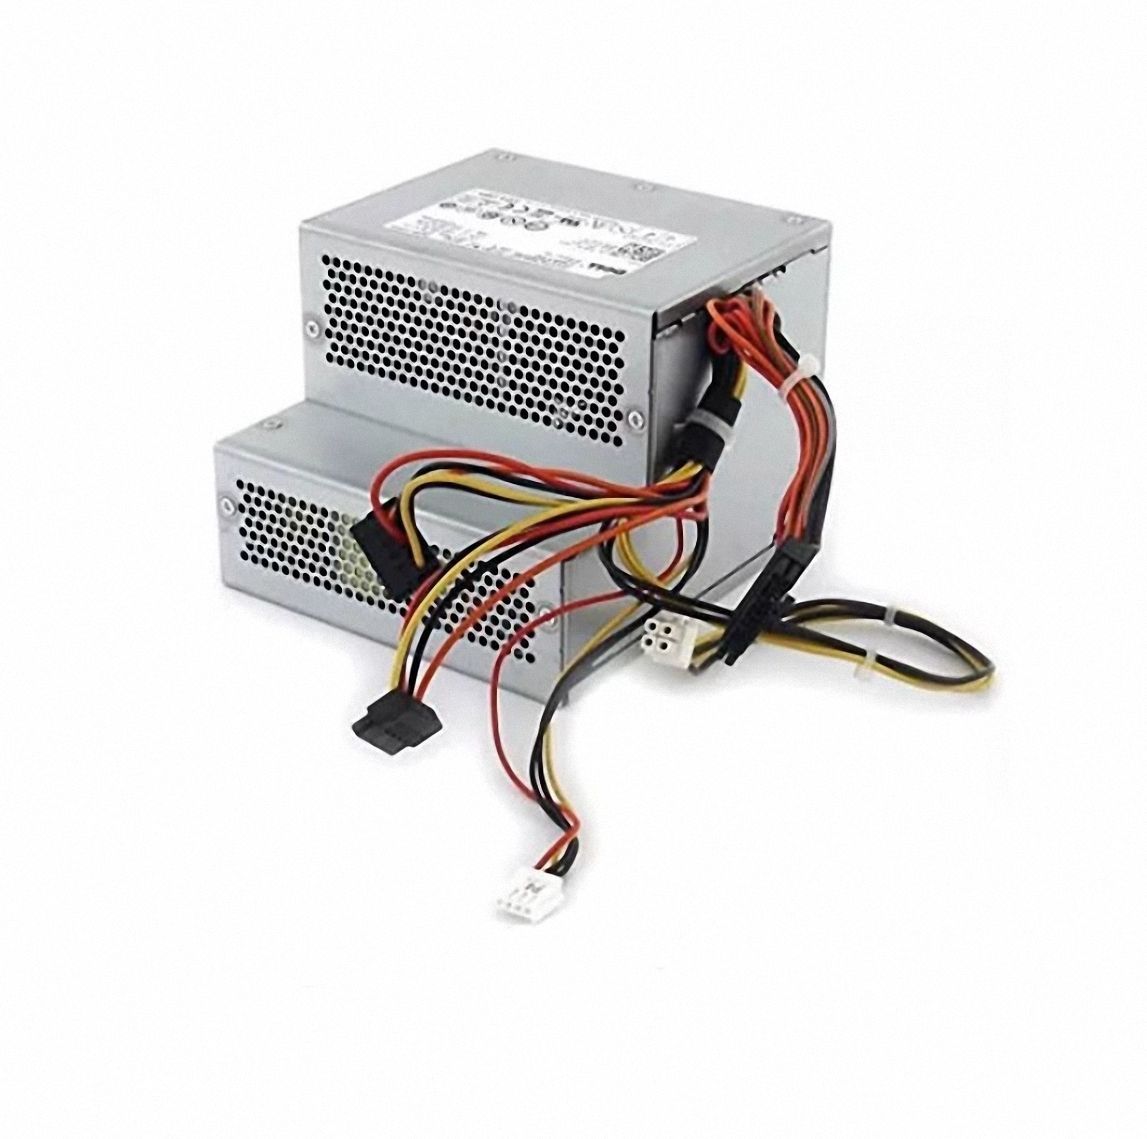 電源ユニット F255E-01 H255E-01 D255P-00 for Dell 760 780 960 L255P-01 AC255AD-00  Power Supply - メルカリ